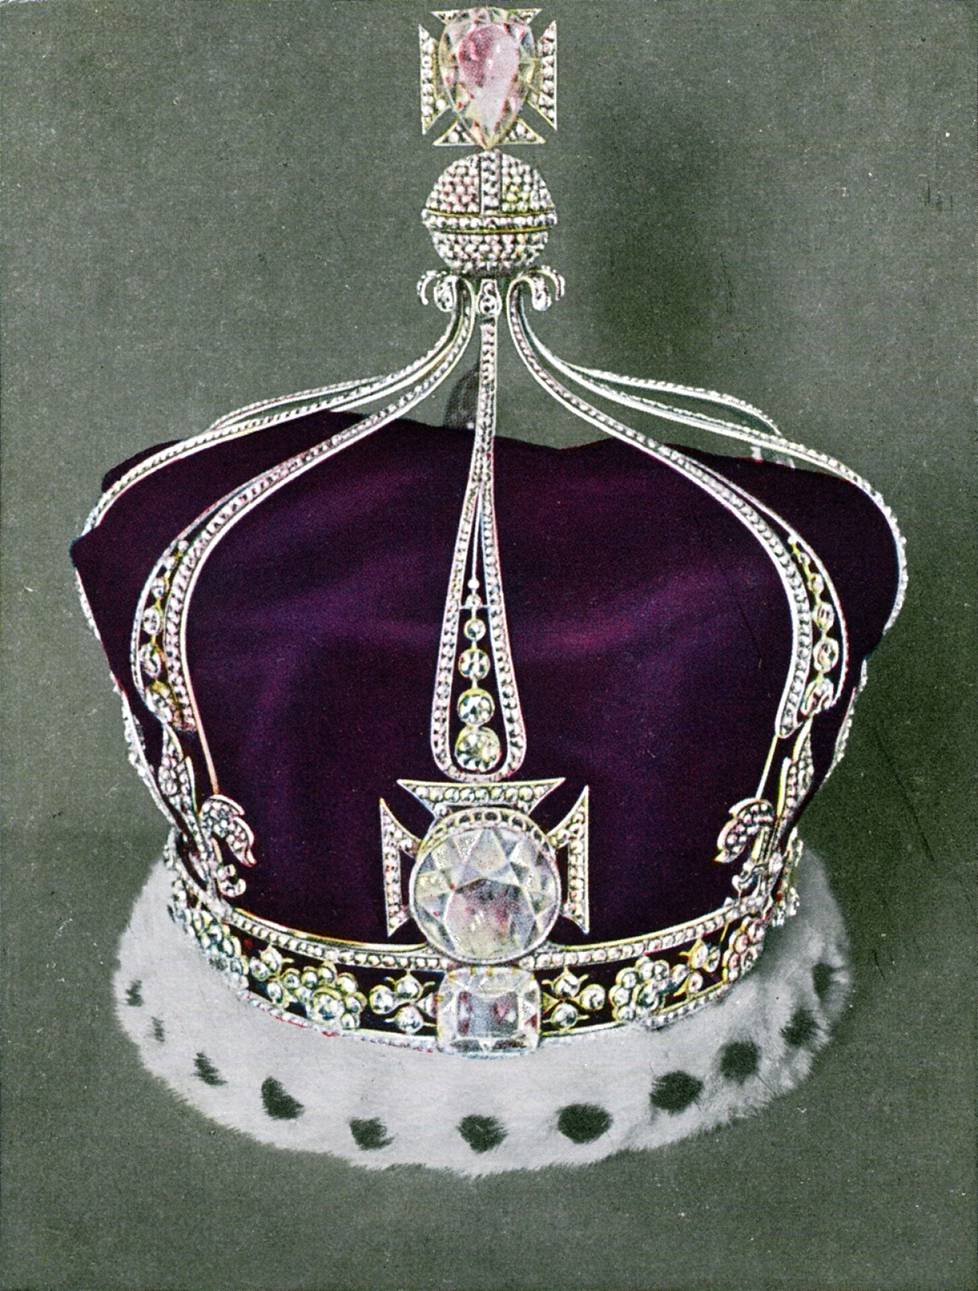 Kuningataräiti Elisabetin kruunuun upotettu Koh-i-Noor -timantti päätyi kuninkaalliselle perheelle monien veristen vaiheiden kautta ja se on legendojen mukaan kirottu. Intian hallitus on vaatinut Britanniaa palauttamaan timantin takaisin.